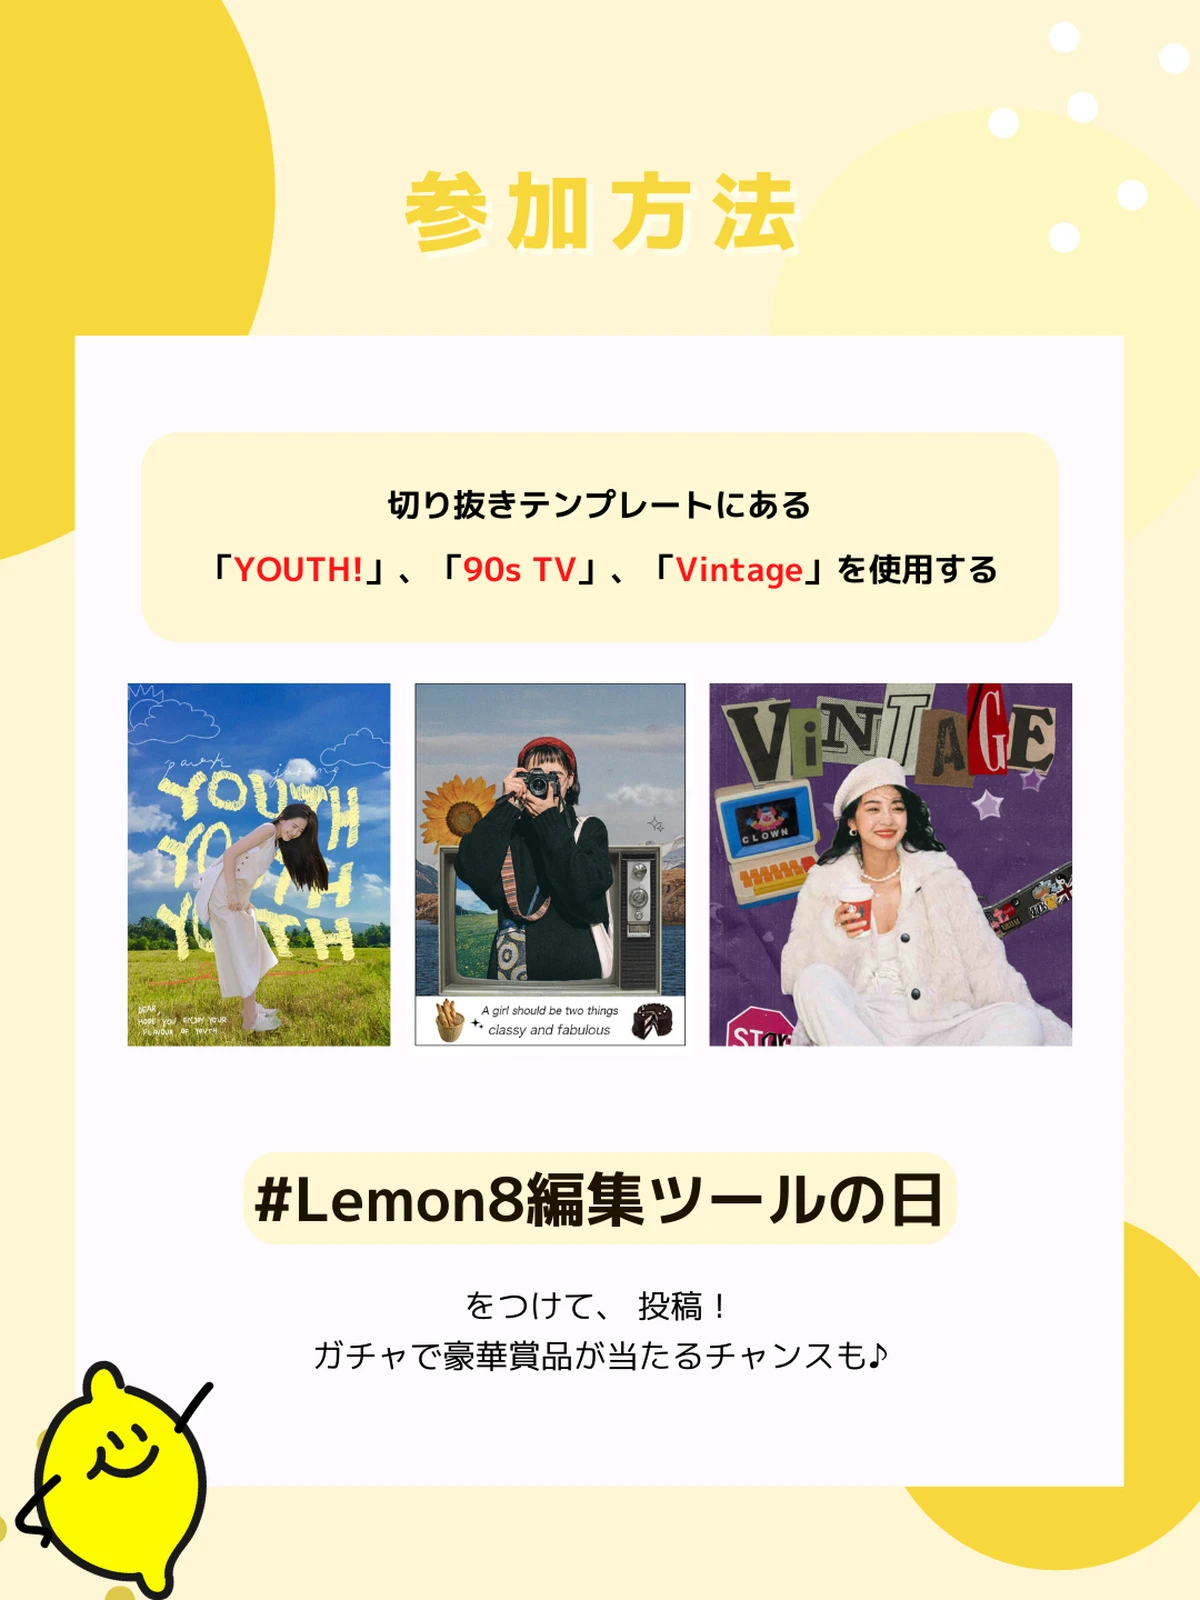 【豪華賞品当たる🎁】アプリ内の編集ツール使ってみよう！「#Lemon8編集ツールの日」投稿キャンペーの画像 (2枚目)